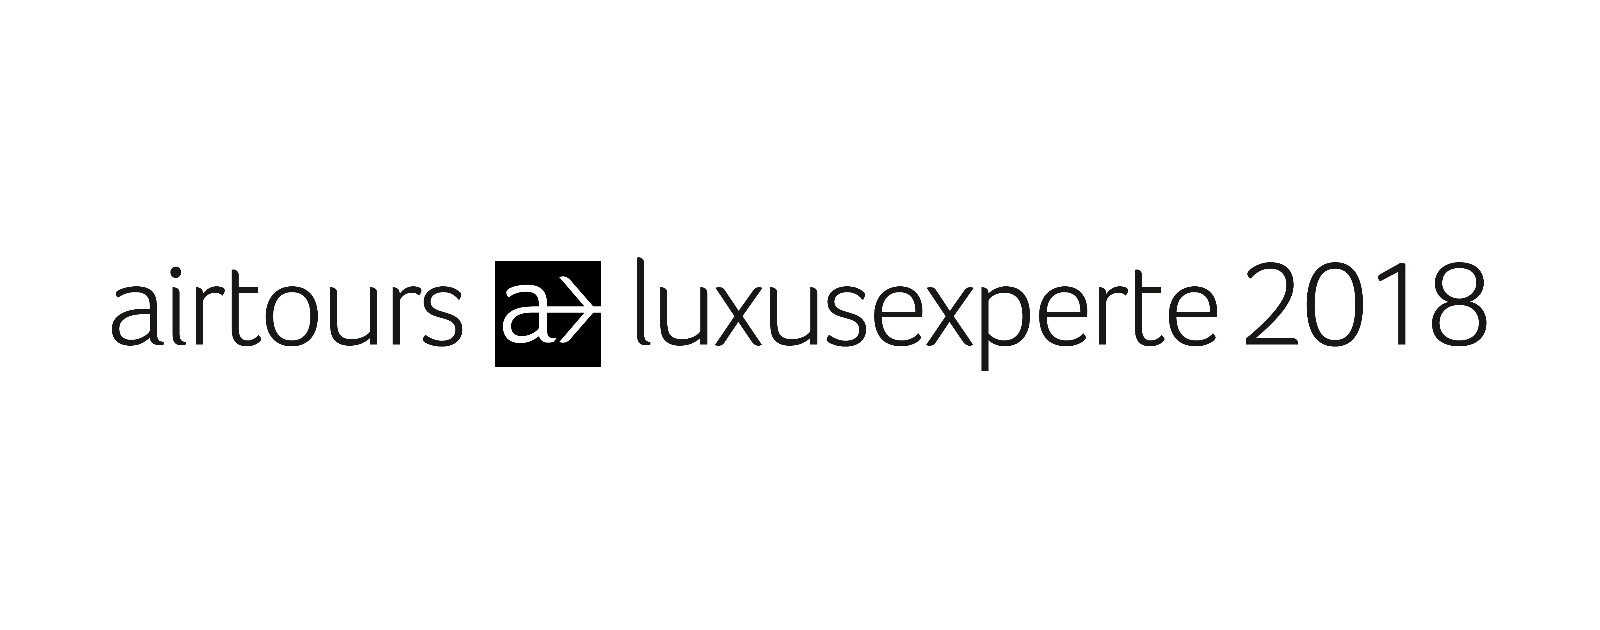 airtours luxusexperte 2018